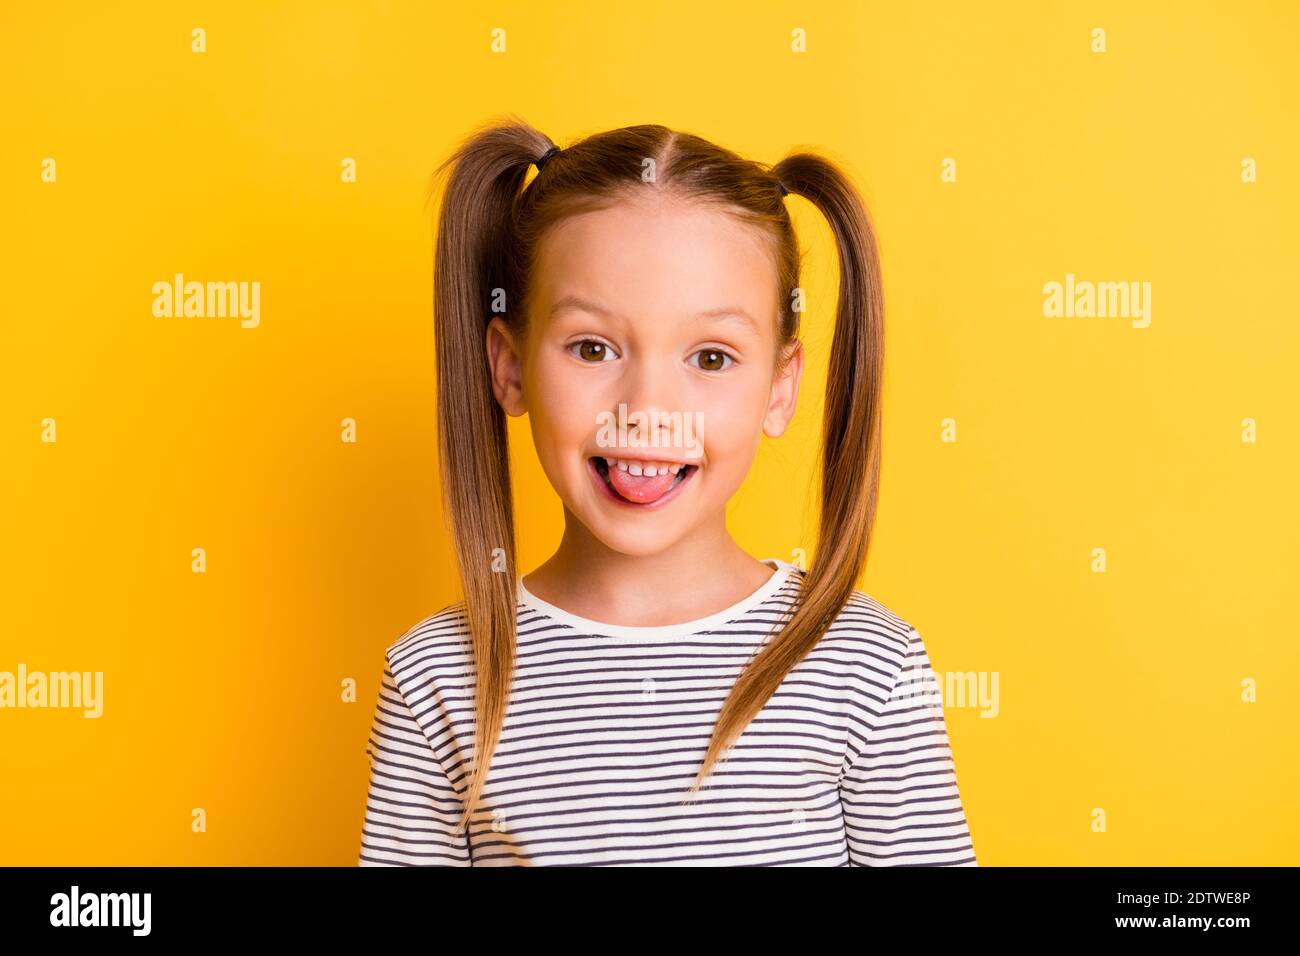 Portrait von jungen lächelnd funky neugierig scherzen Mädchen Kind Kind Stick Zunge isoliert auf gelbem Hintergrund Stockfoto